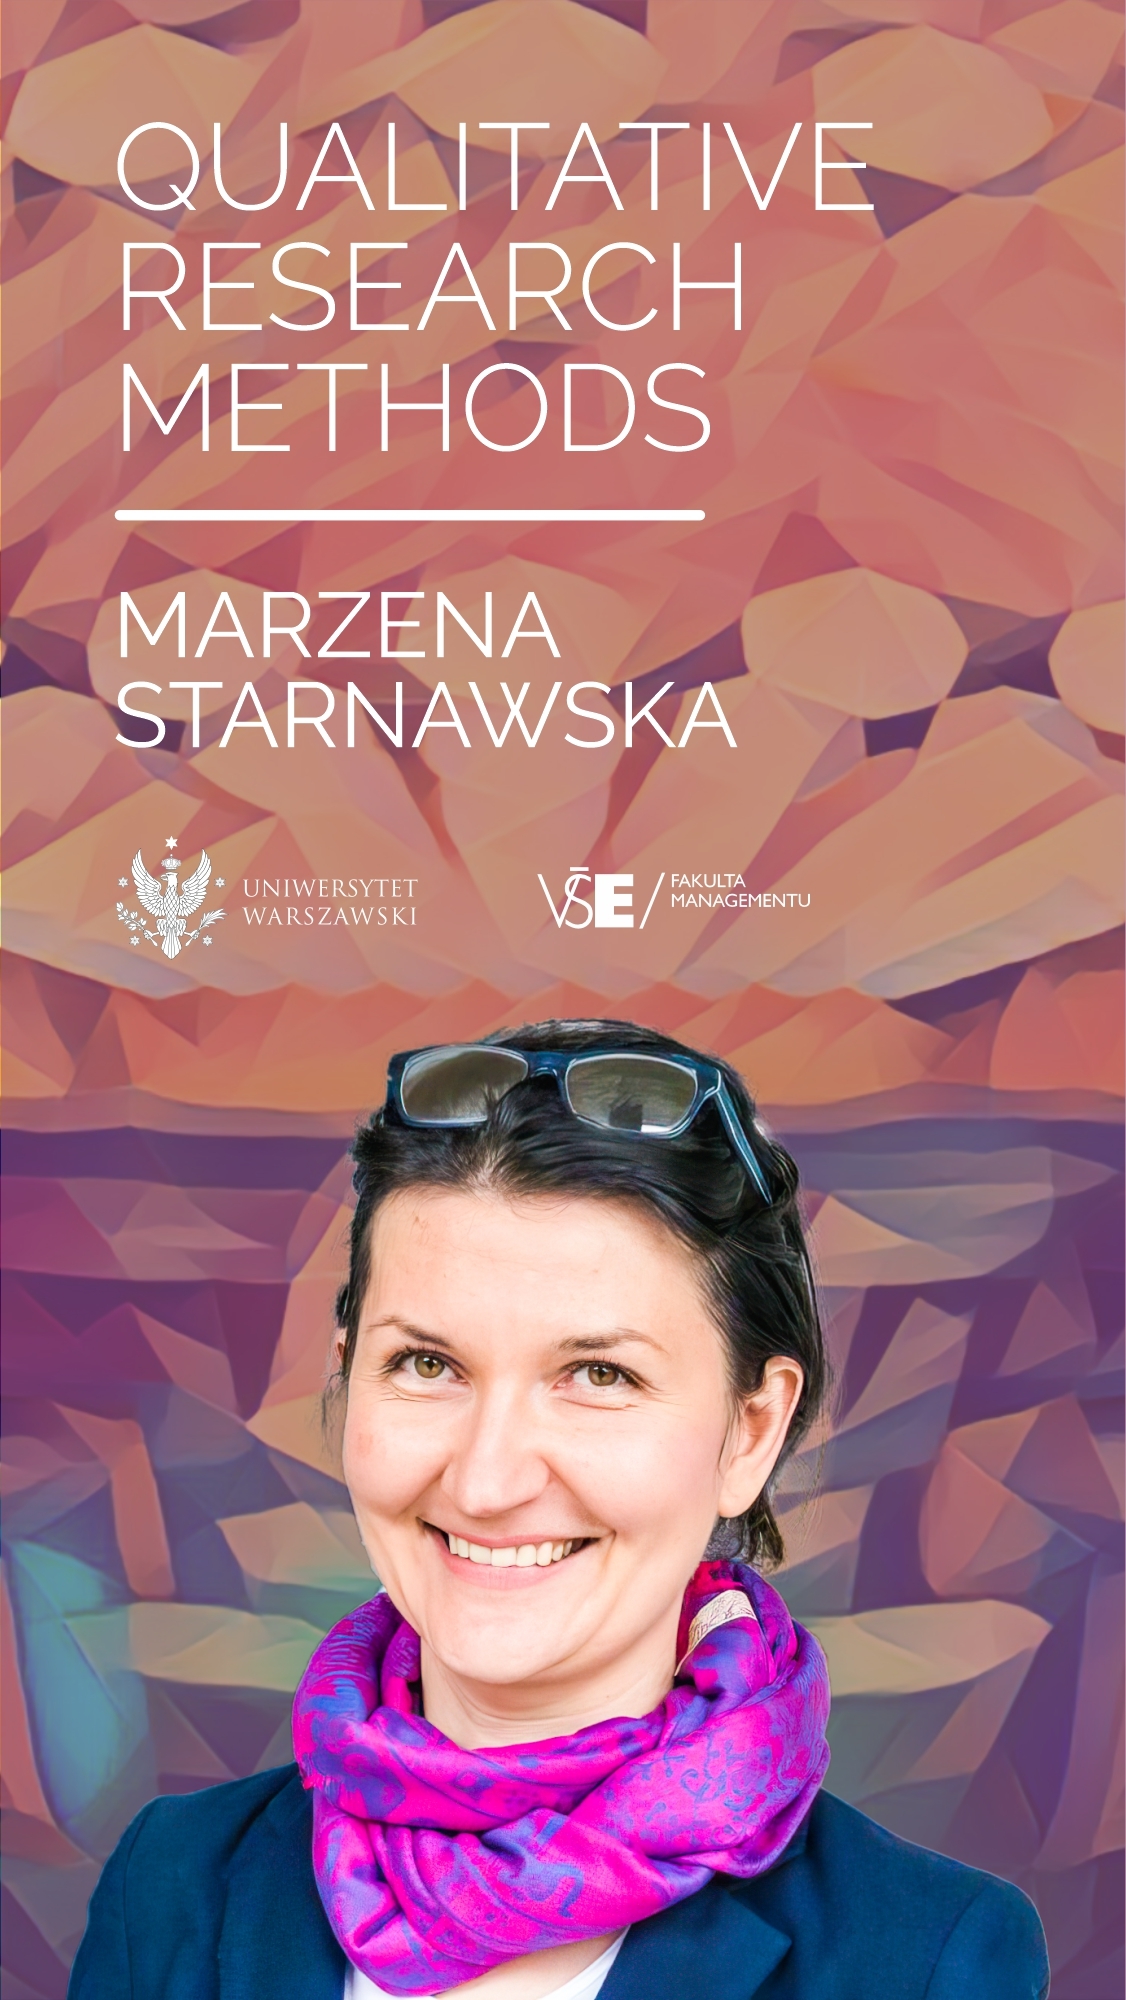 Kurz Qualitative Research Methods dr. Marzeny Starnawské z Faculty of Management, University of Warsaw /16. 5. 17:00/